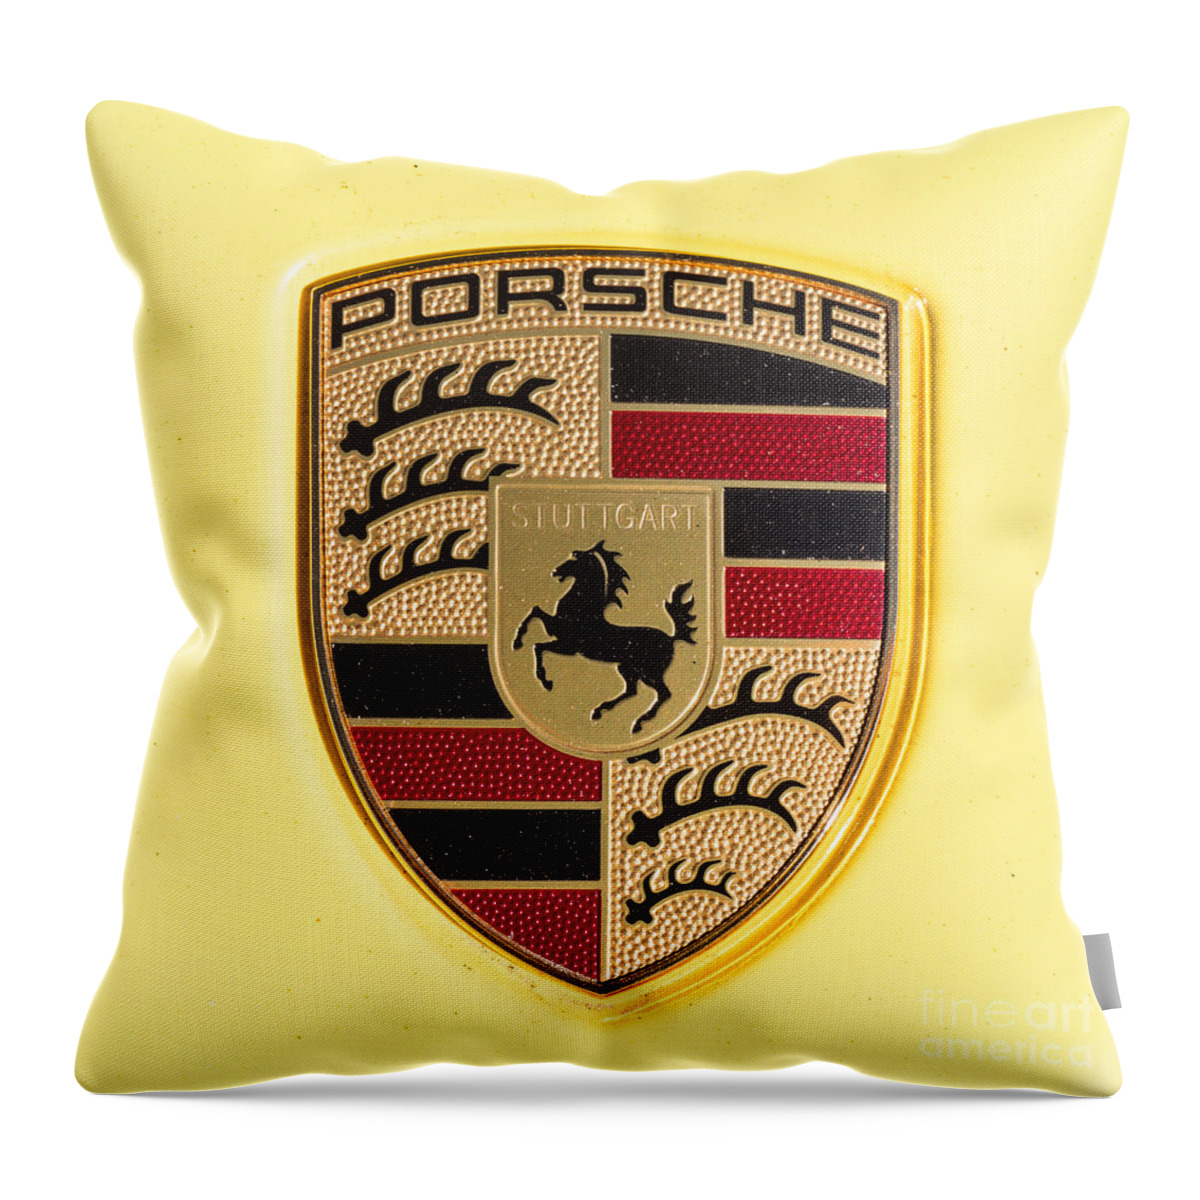 Porsche Emblem Throw Pillow featuring the photograph Yellow Porsche Emblem by Robert Loe